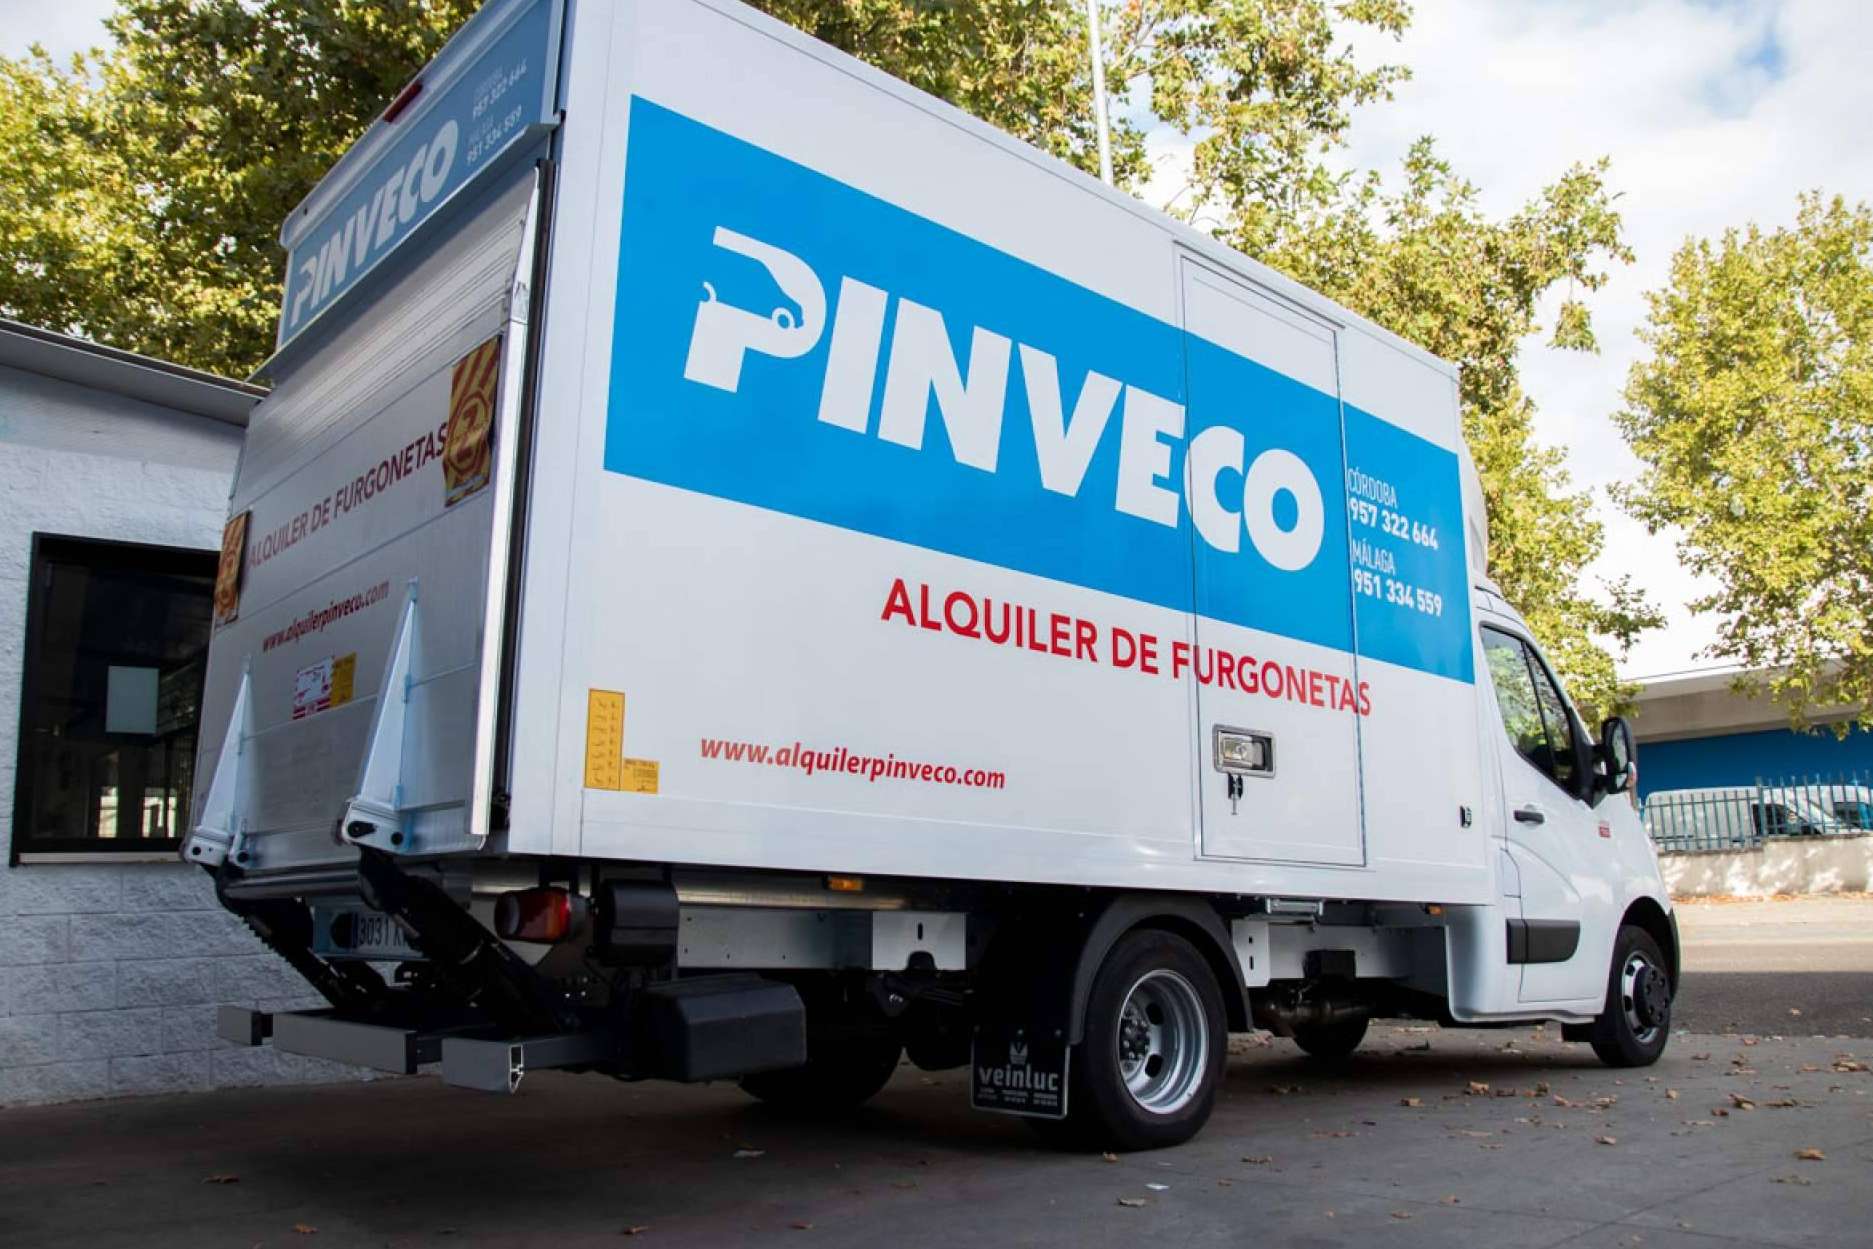 Alquiler de furgonetas para profesionales en Andalucía de la mano de Pinveco